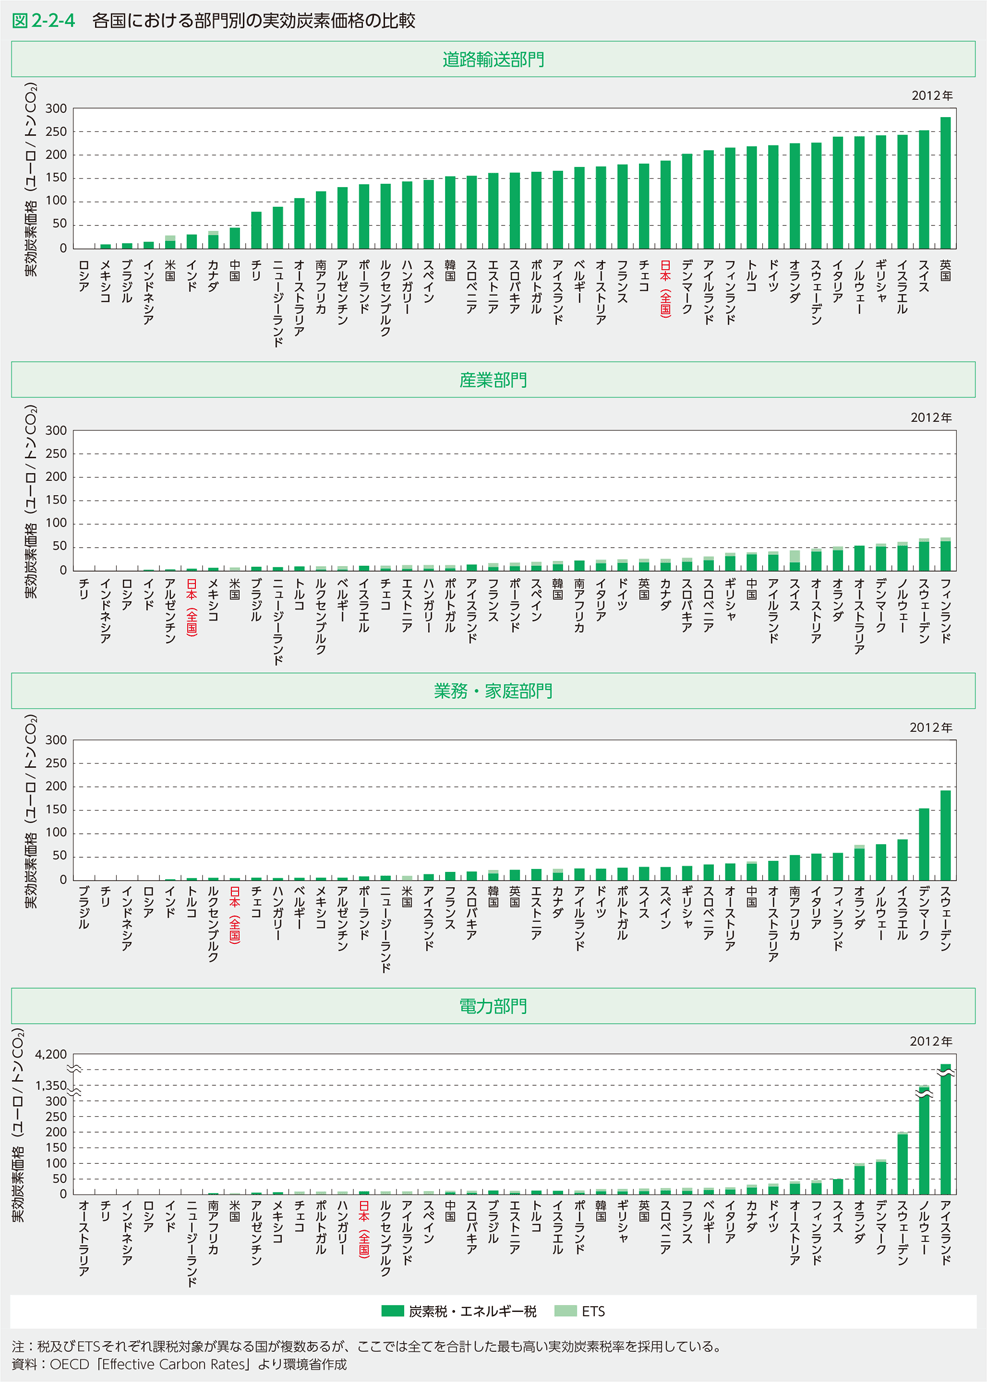 図2-2-4 各国における部門別の実効炭素価格の比較